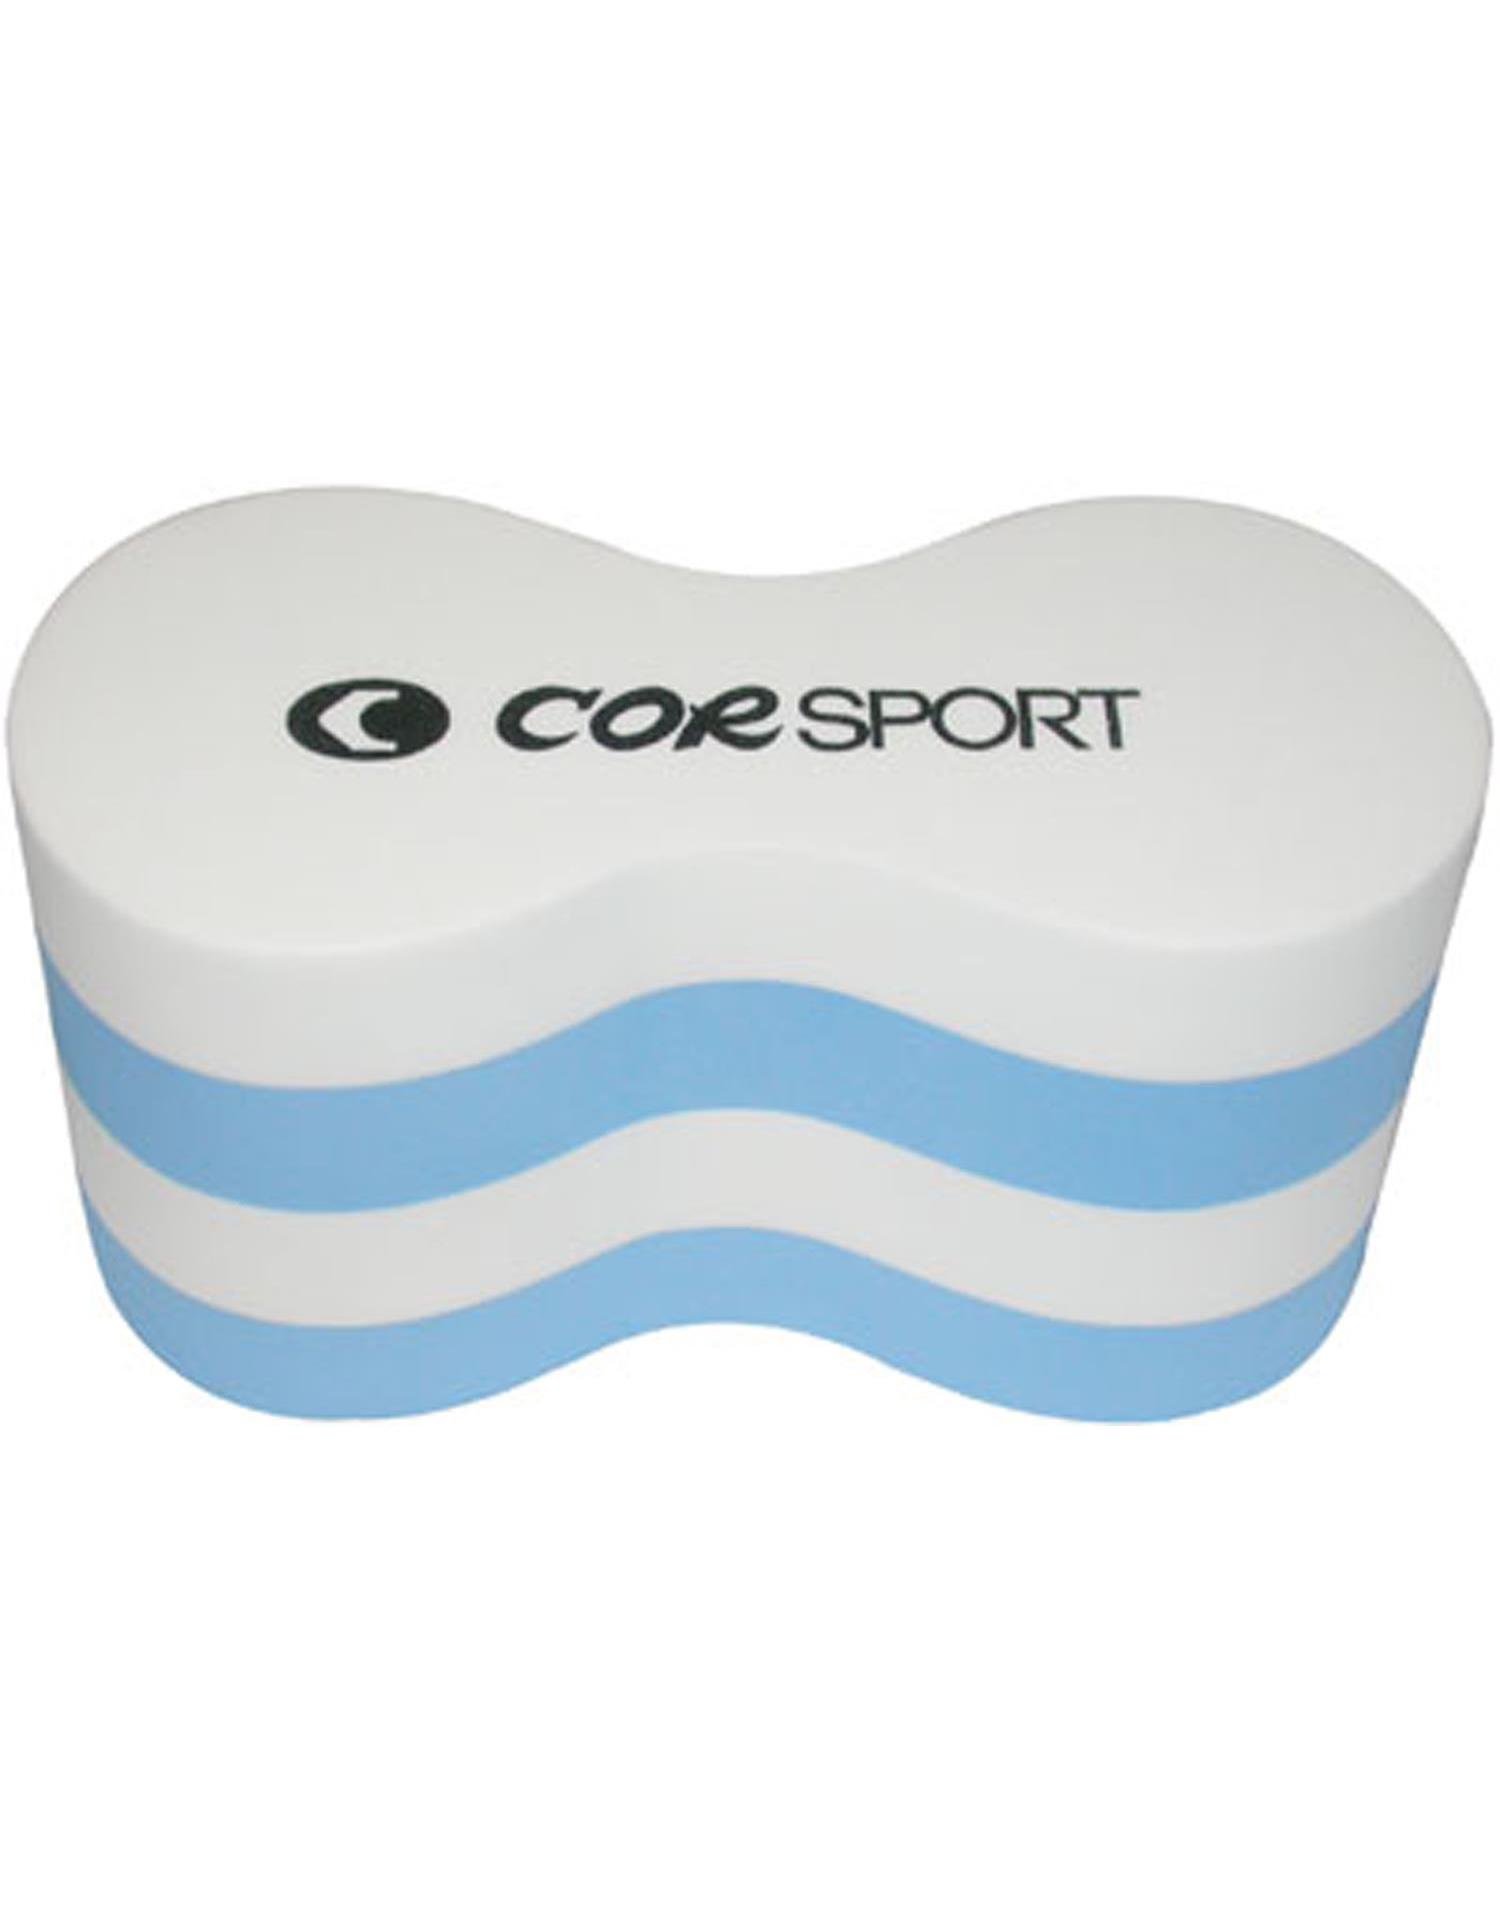 Cor Sport Pool Buoy in E.V.A. (Dimensioni cm 23,5 x 12,5 - CELESTE-BIANCO)